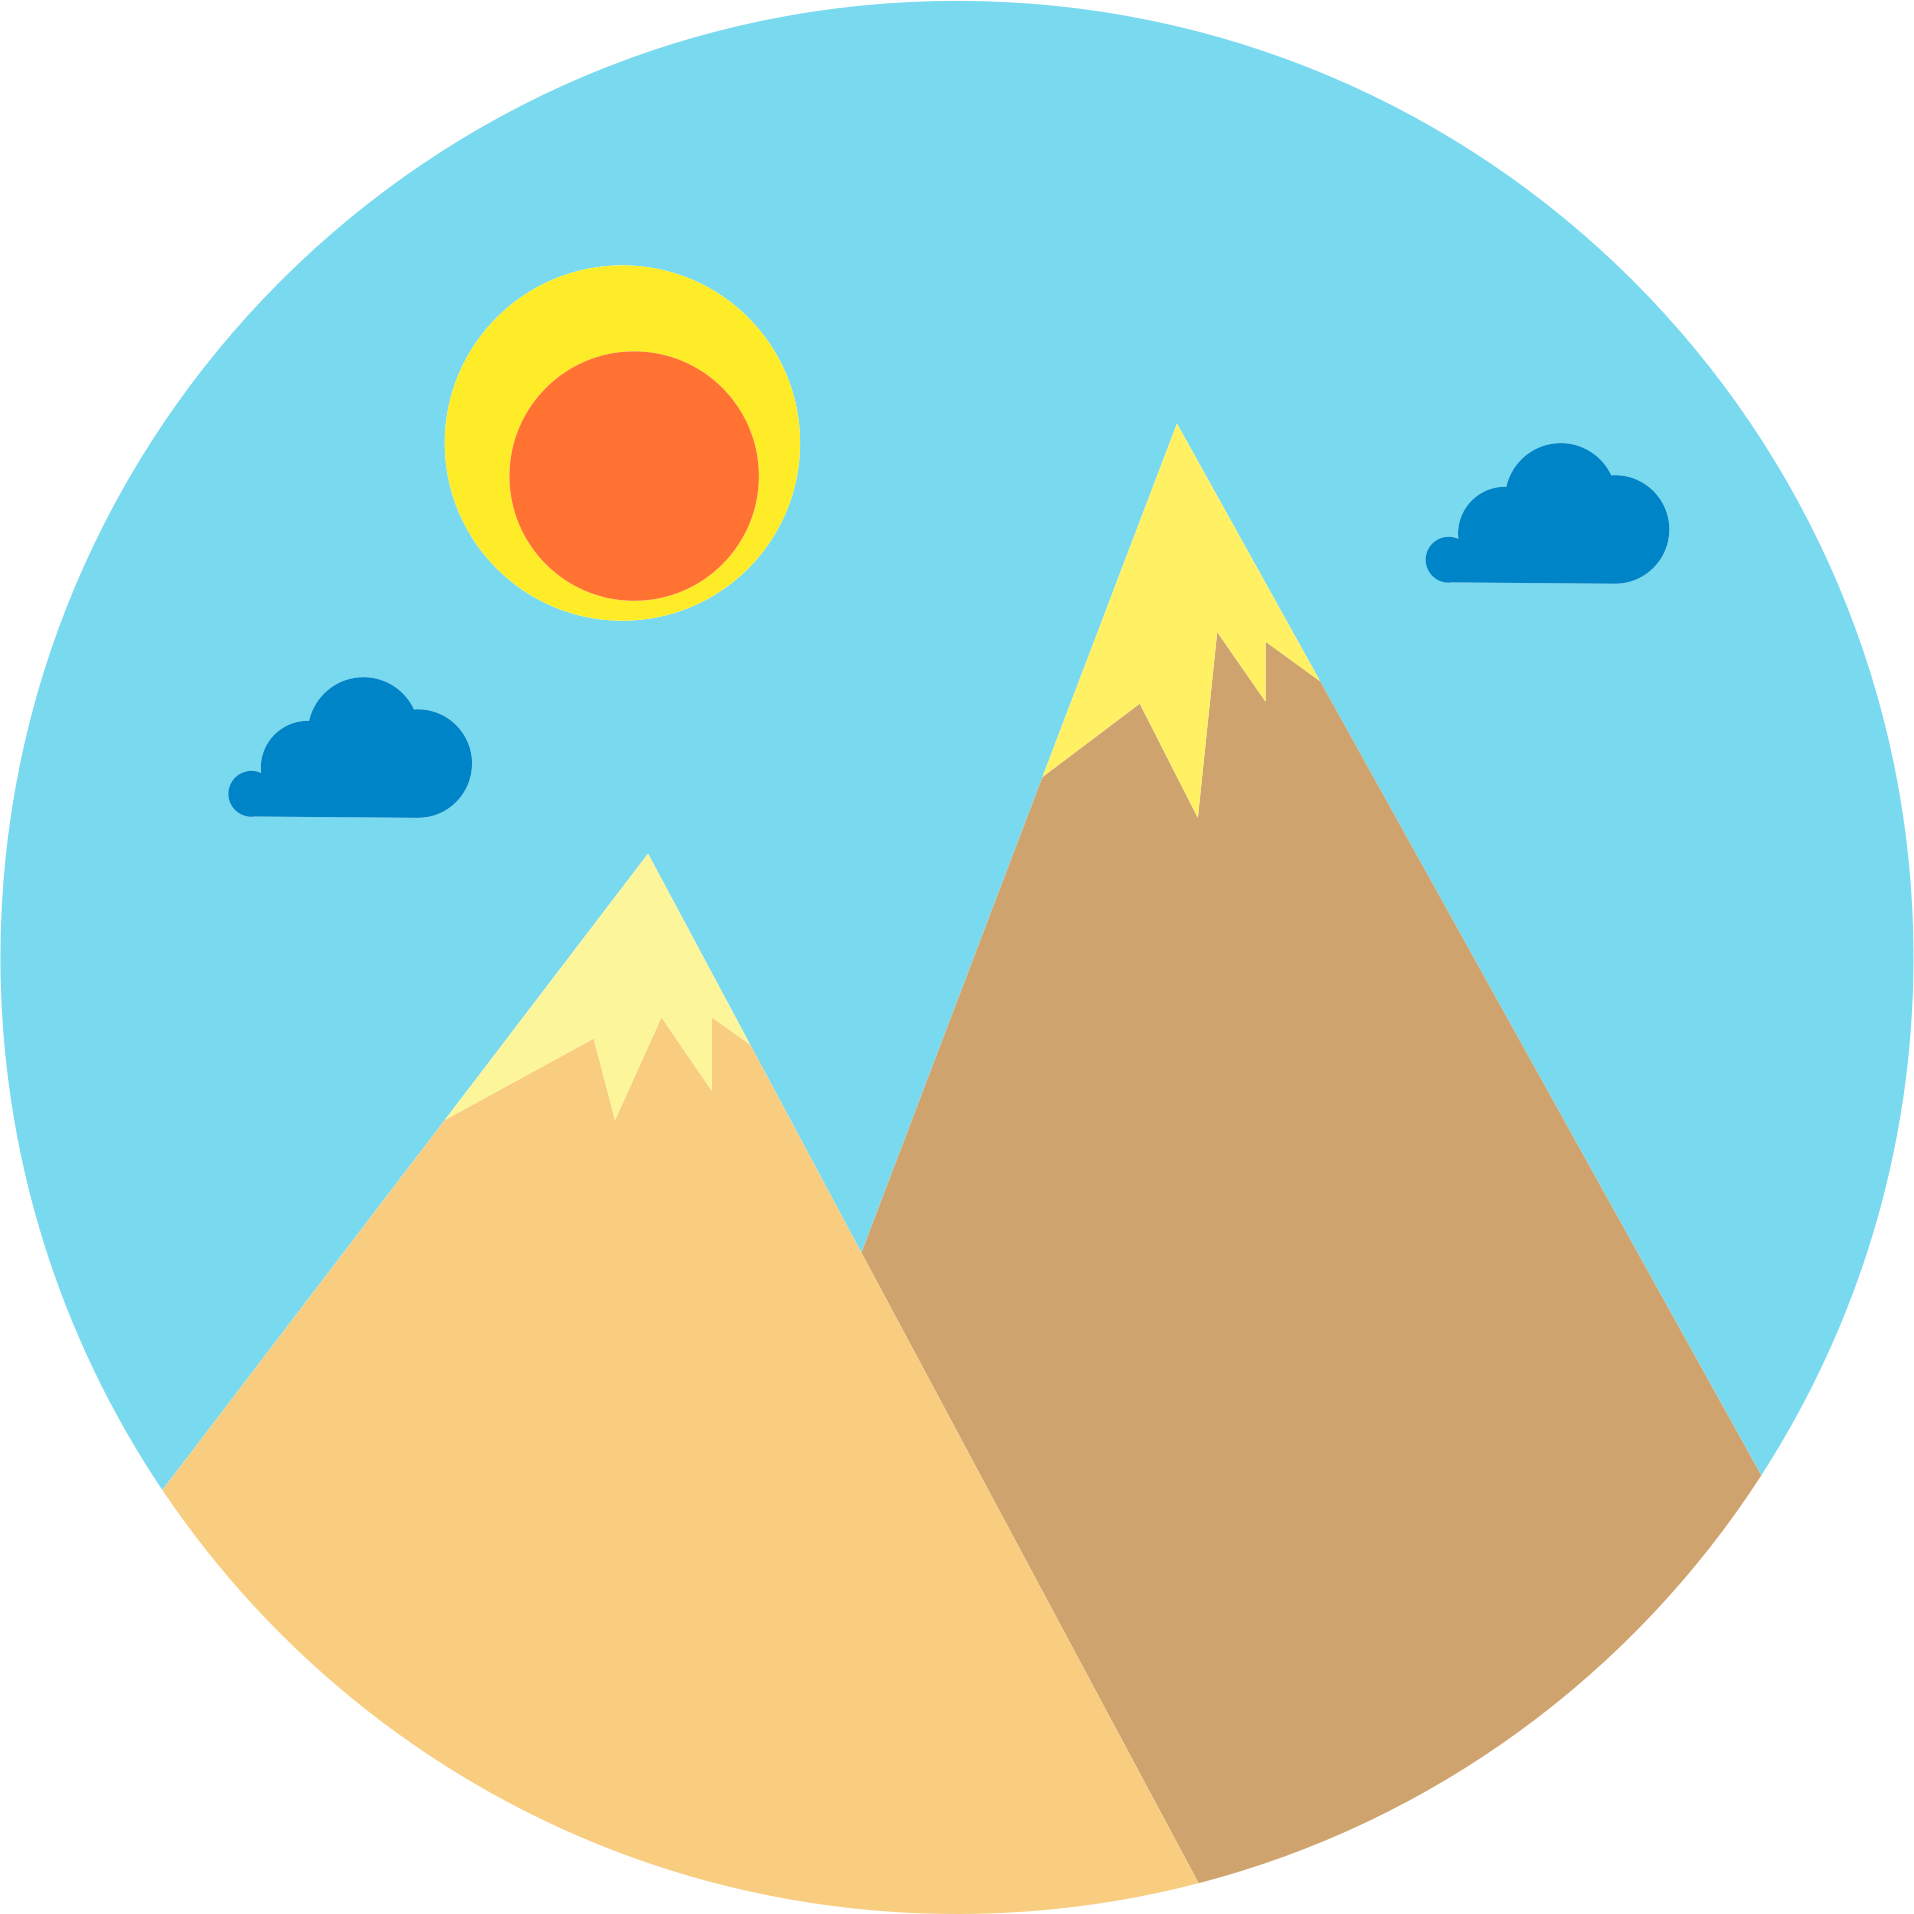 clipart mountains logo